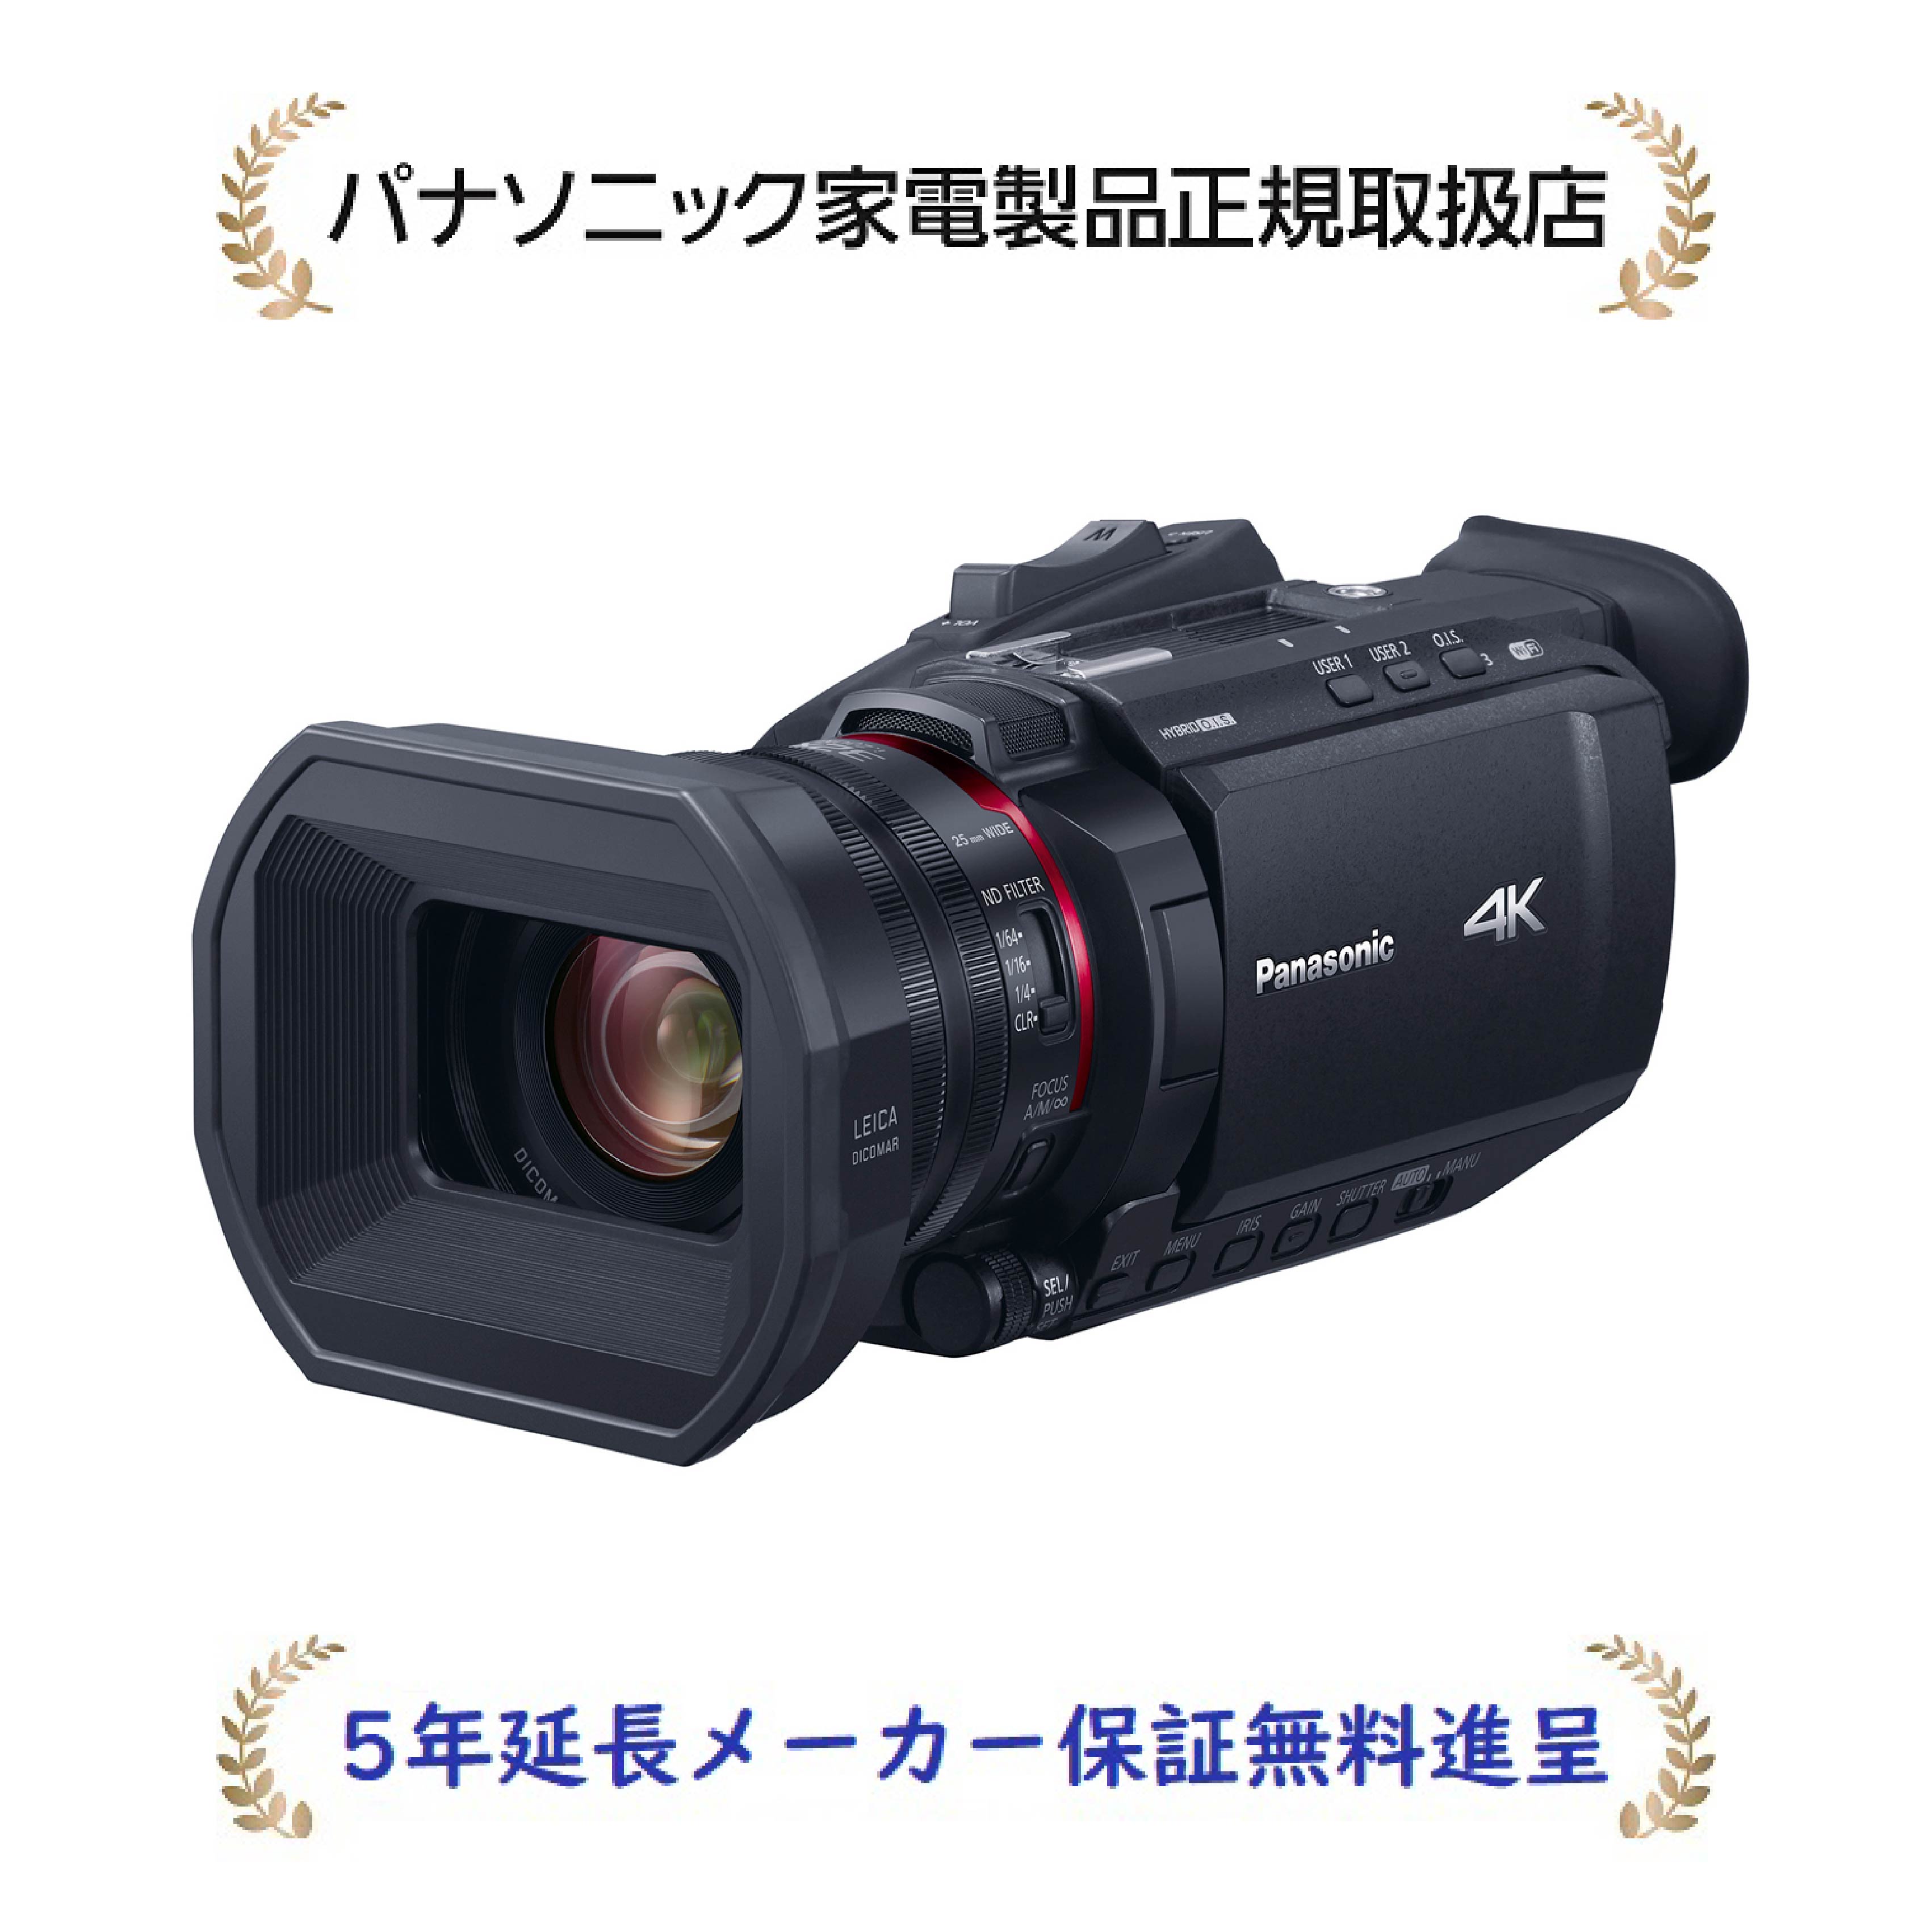 パナソニック HC-X1500-K[5年延長メーカー保証無料進呈](HCX1500K) デジタル4Kビデオカメラ